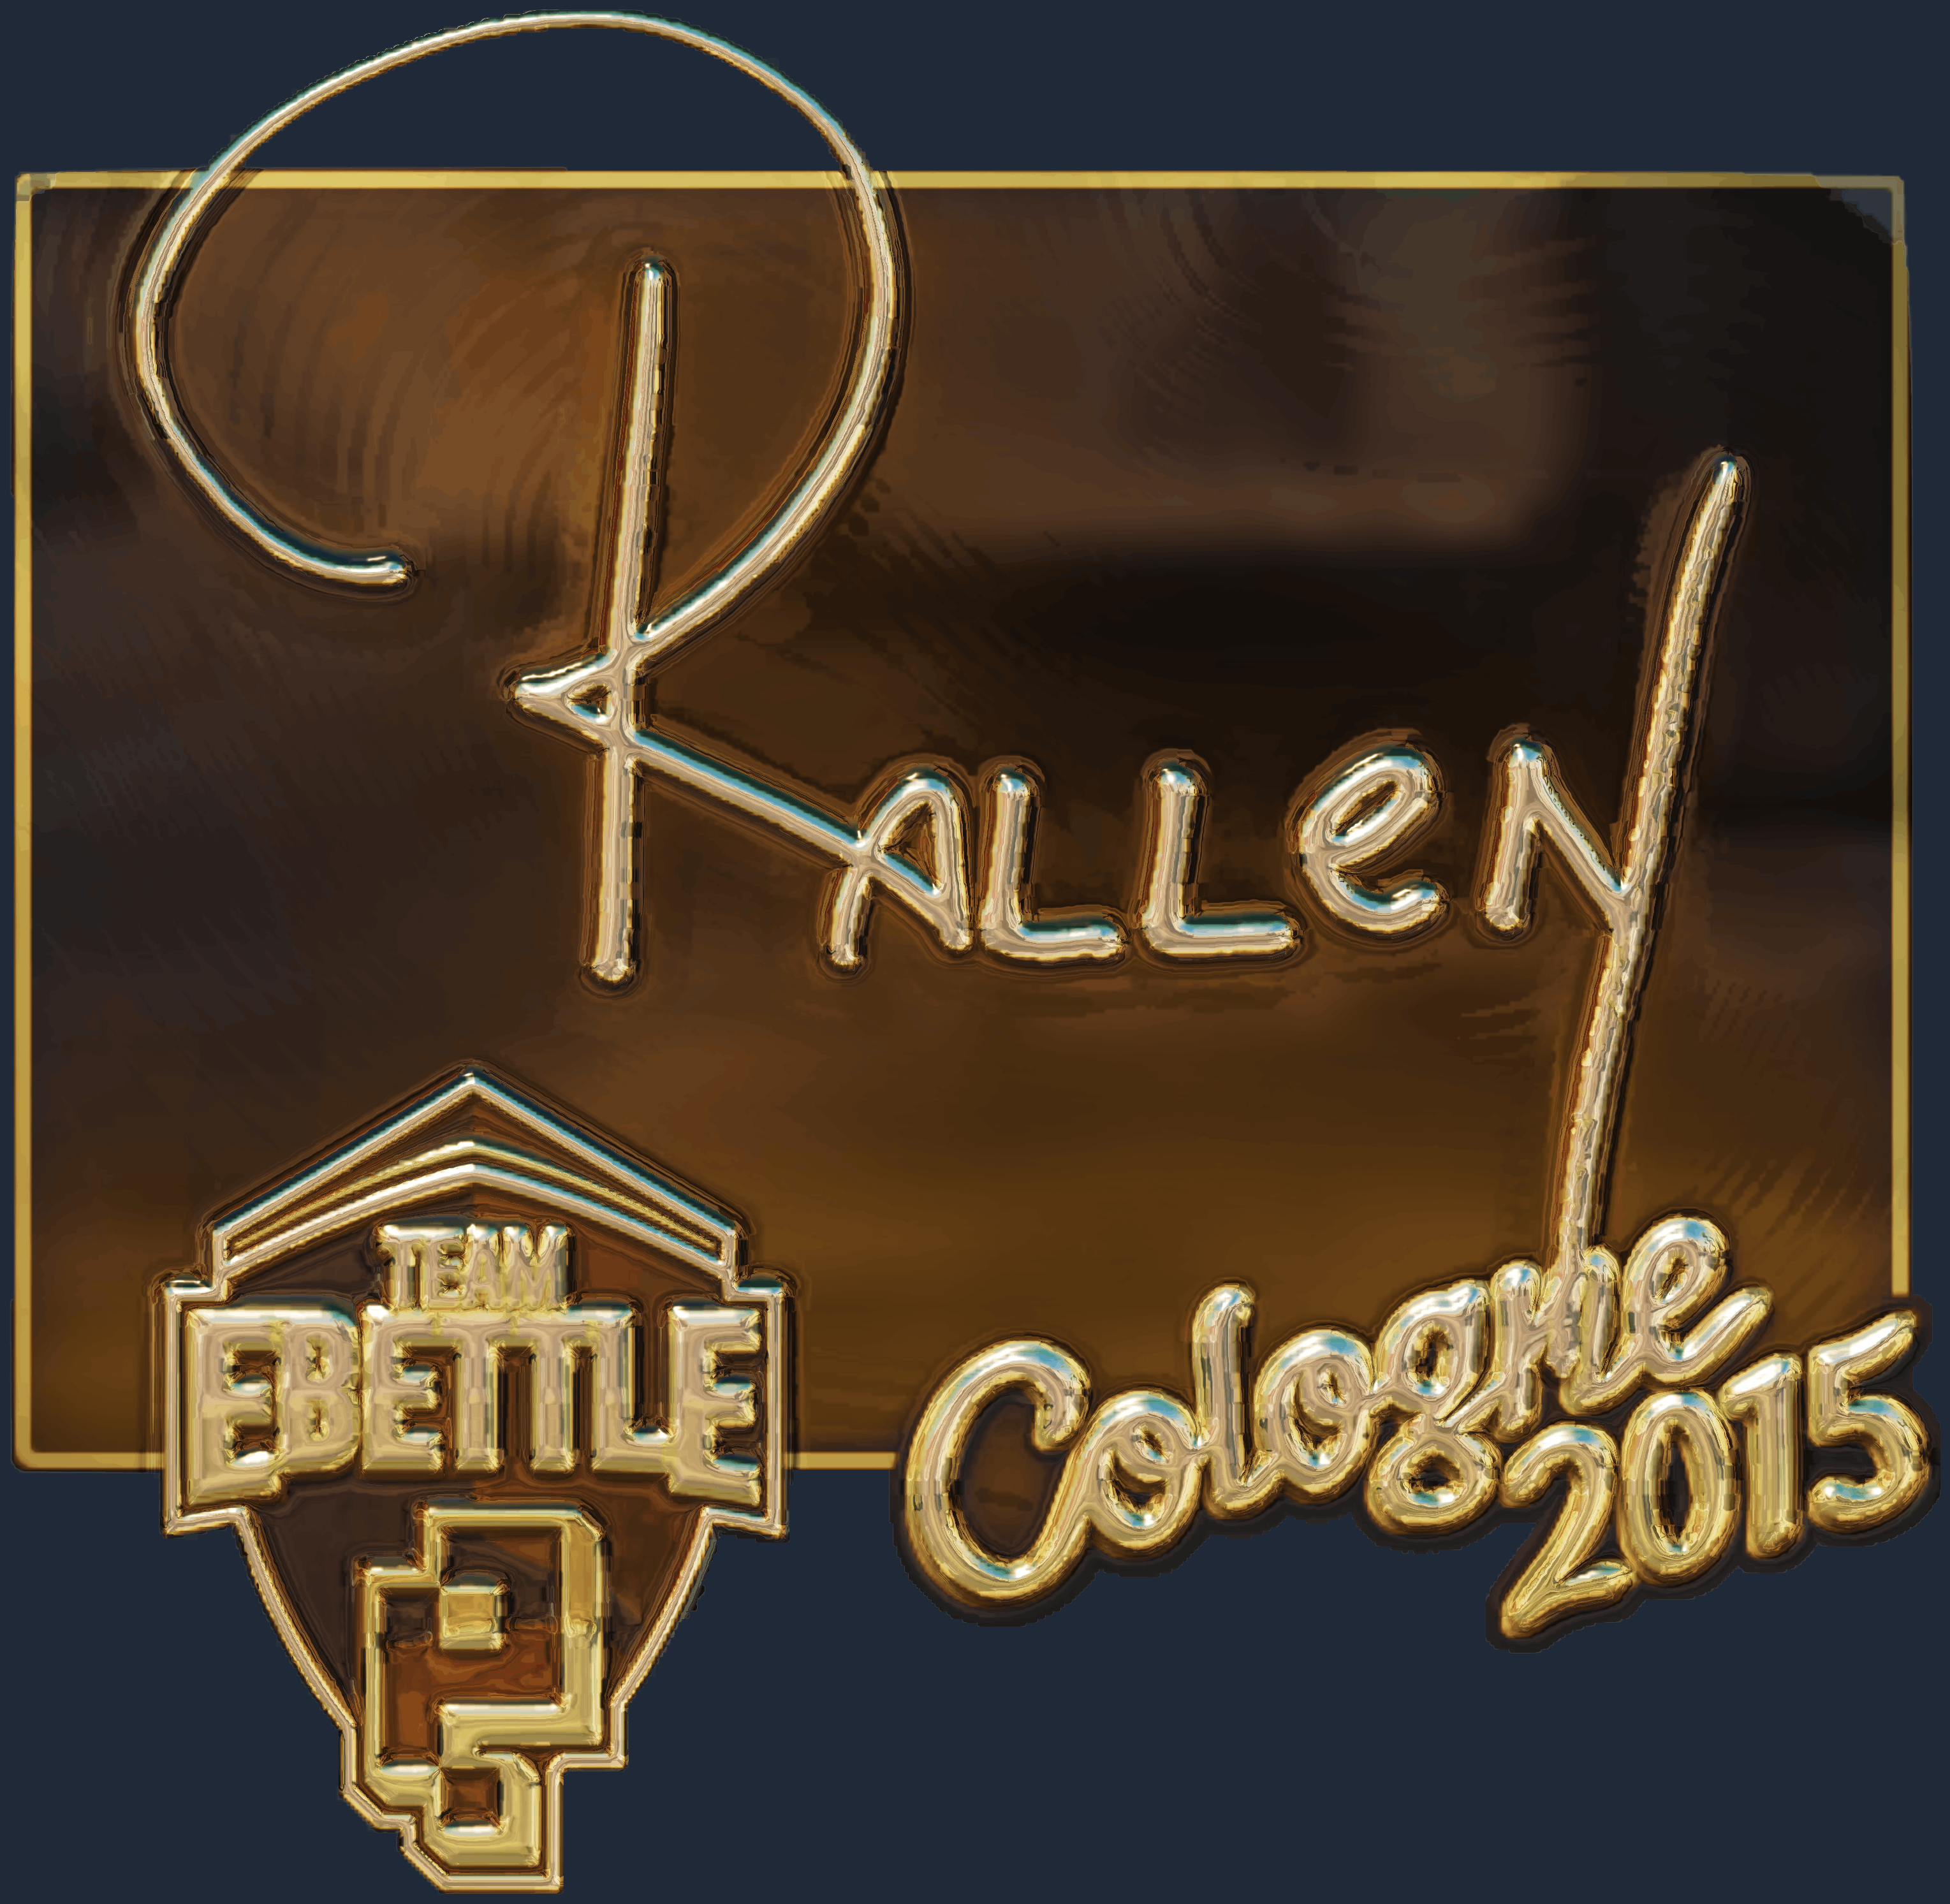 Sticker | rallen (Gold) | Cologne 2015 Screenshot